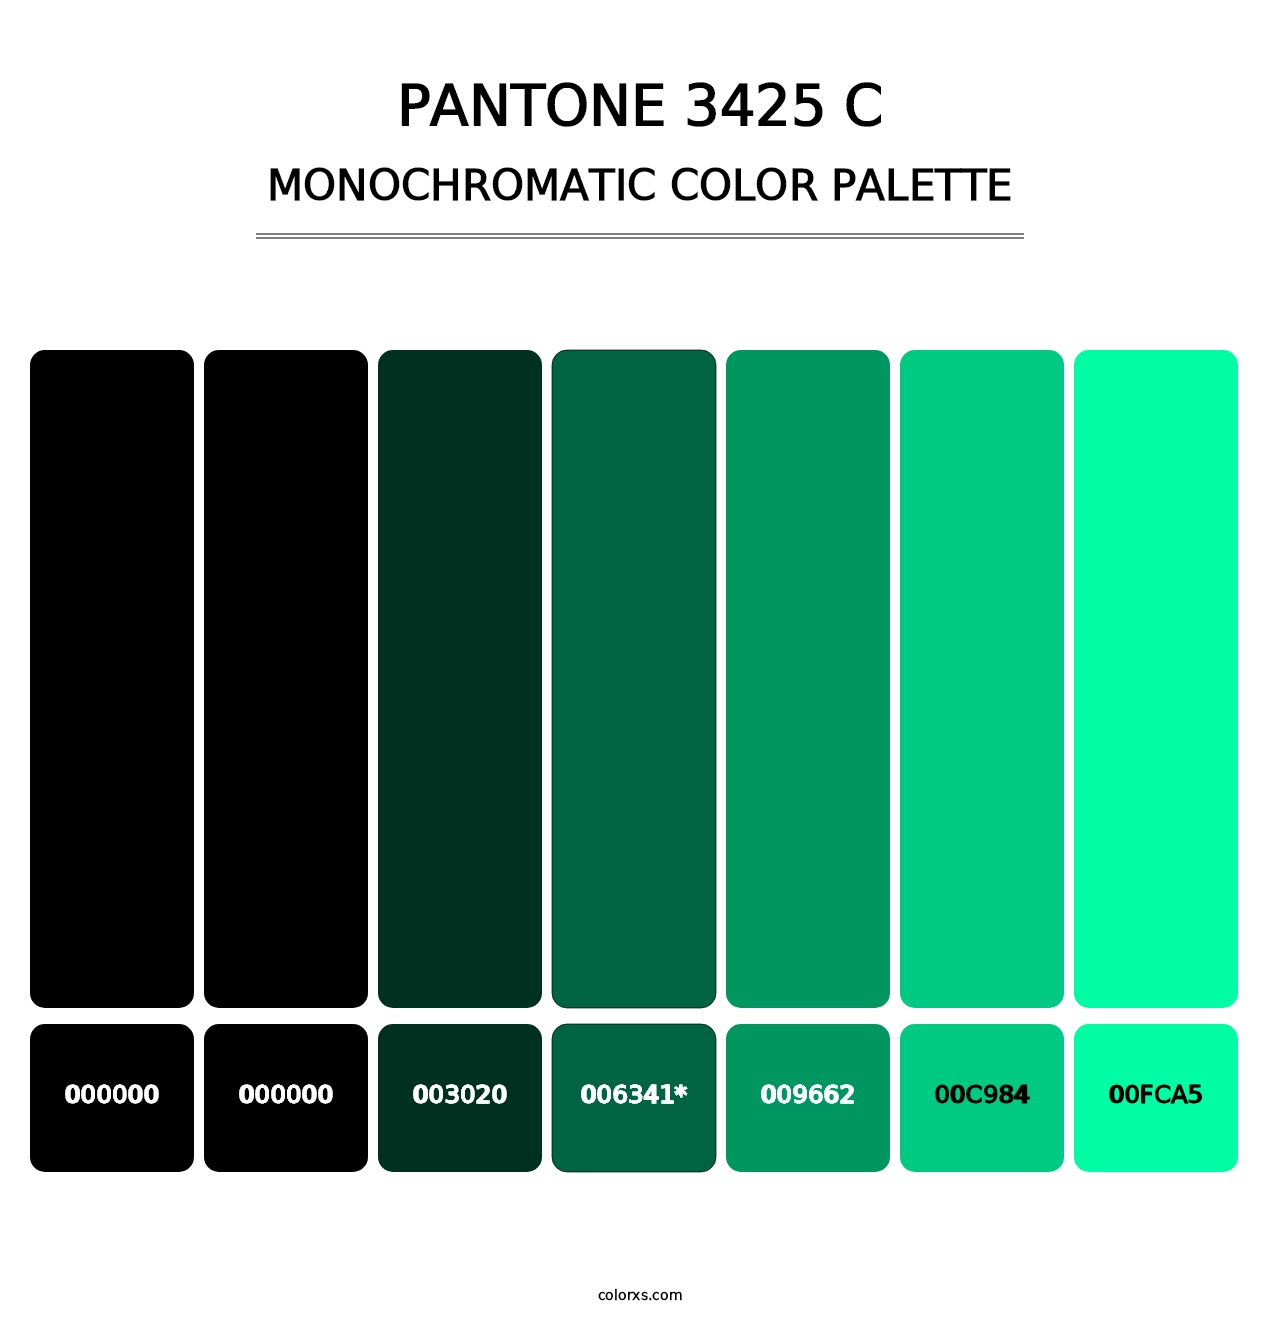 PANTONE 3425 C - Monochromatic Color Palette